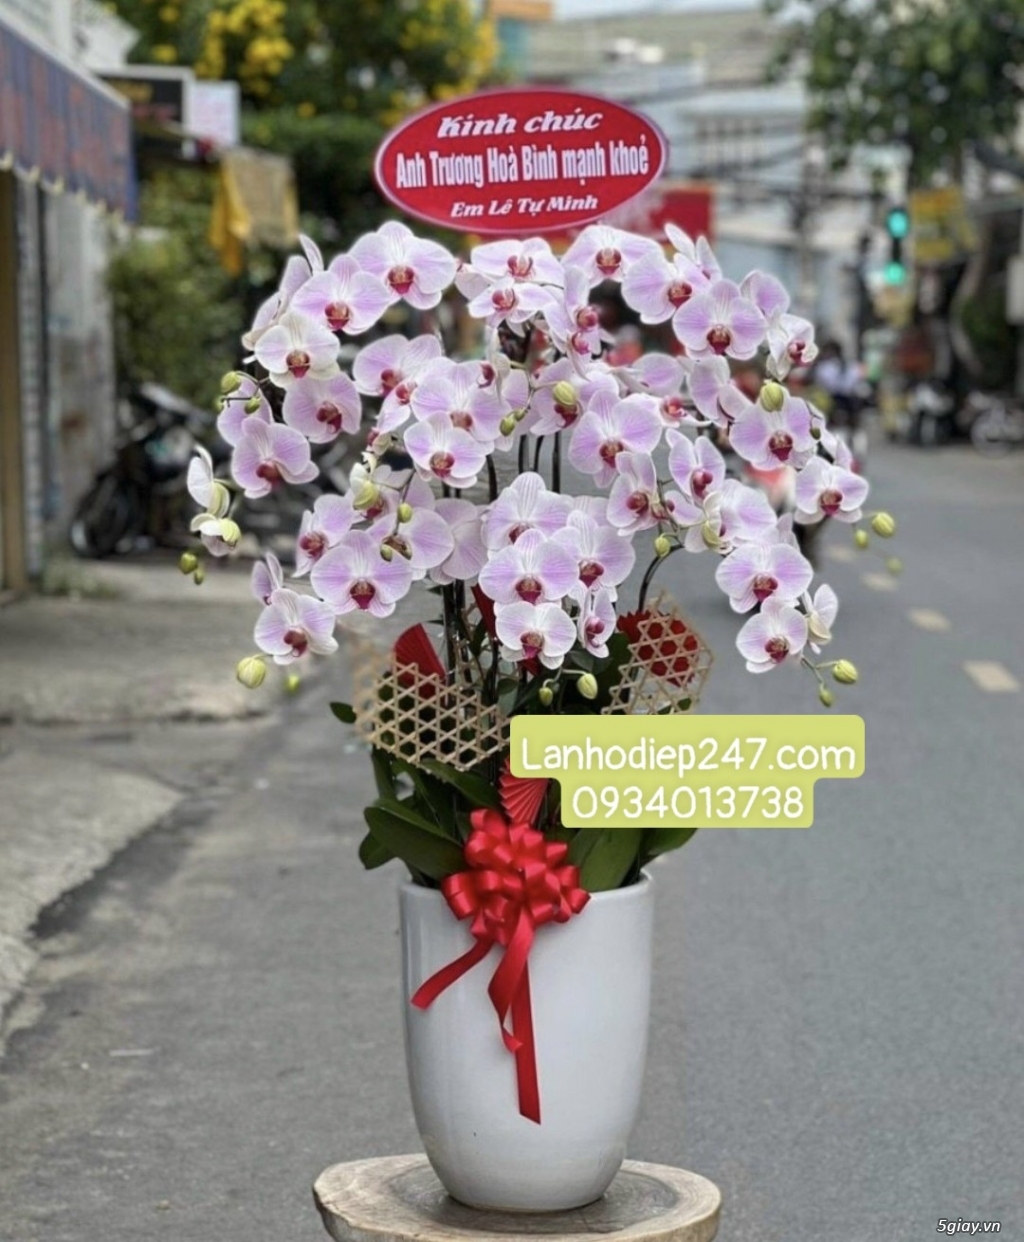 Shop hoa tươi 247 chuyên cung cấp lan hồ điệp tại tphcm 0934013738 - 1